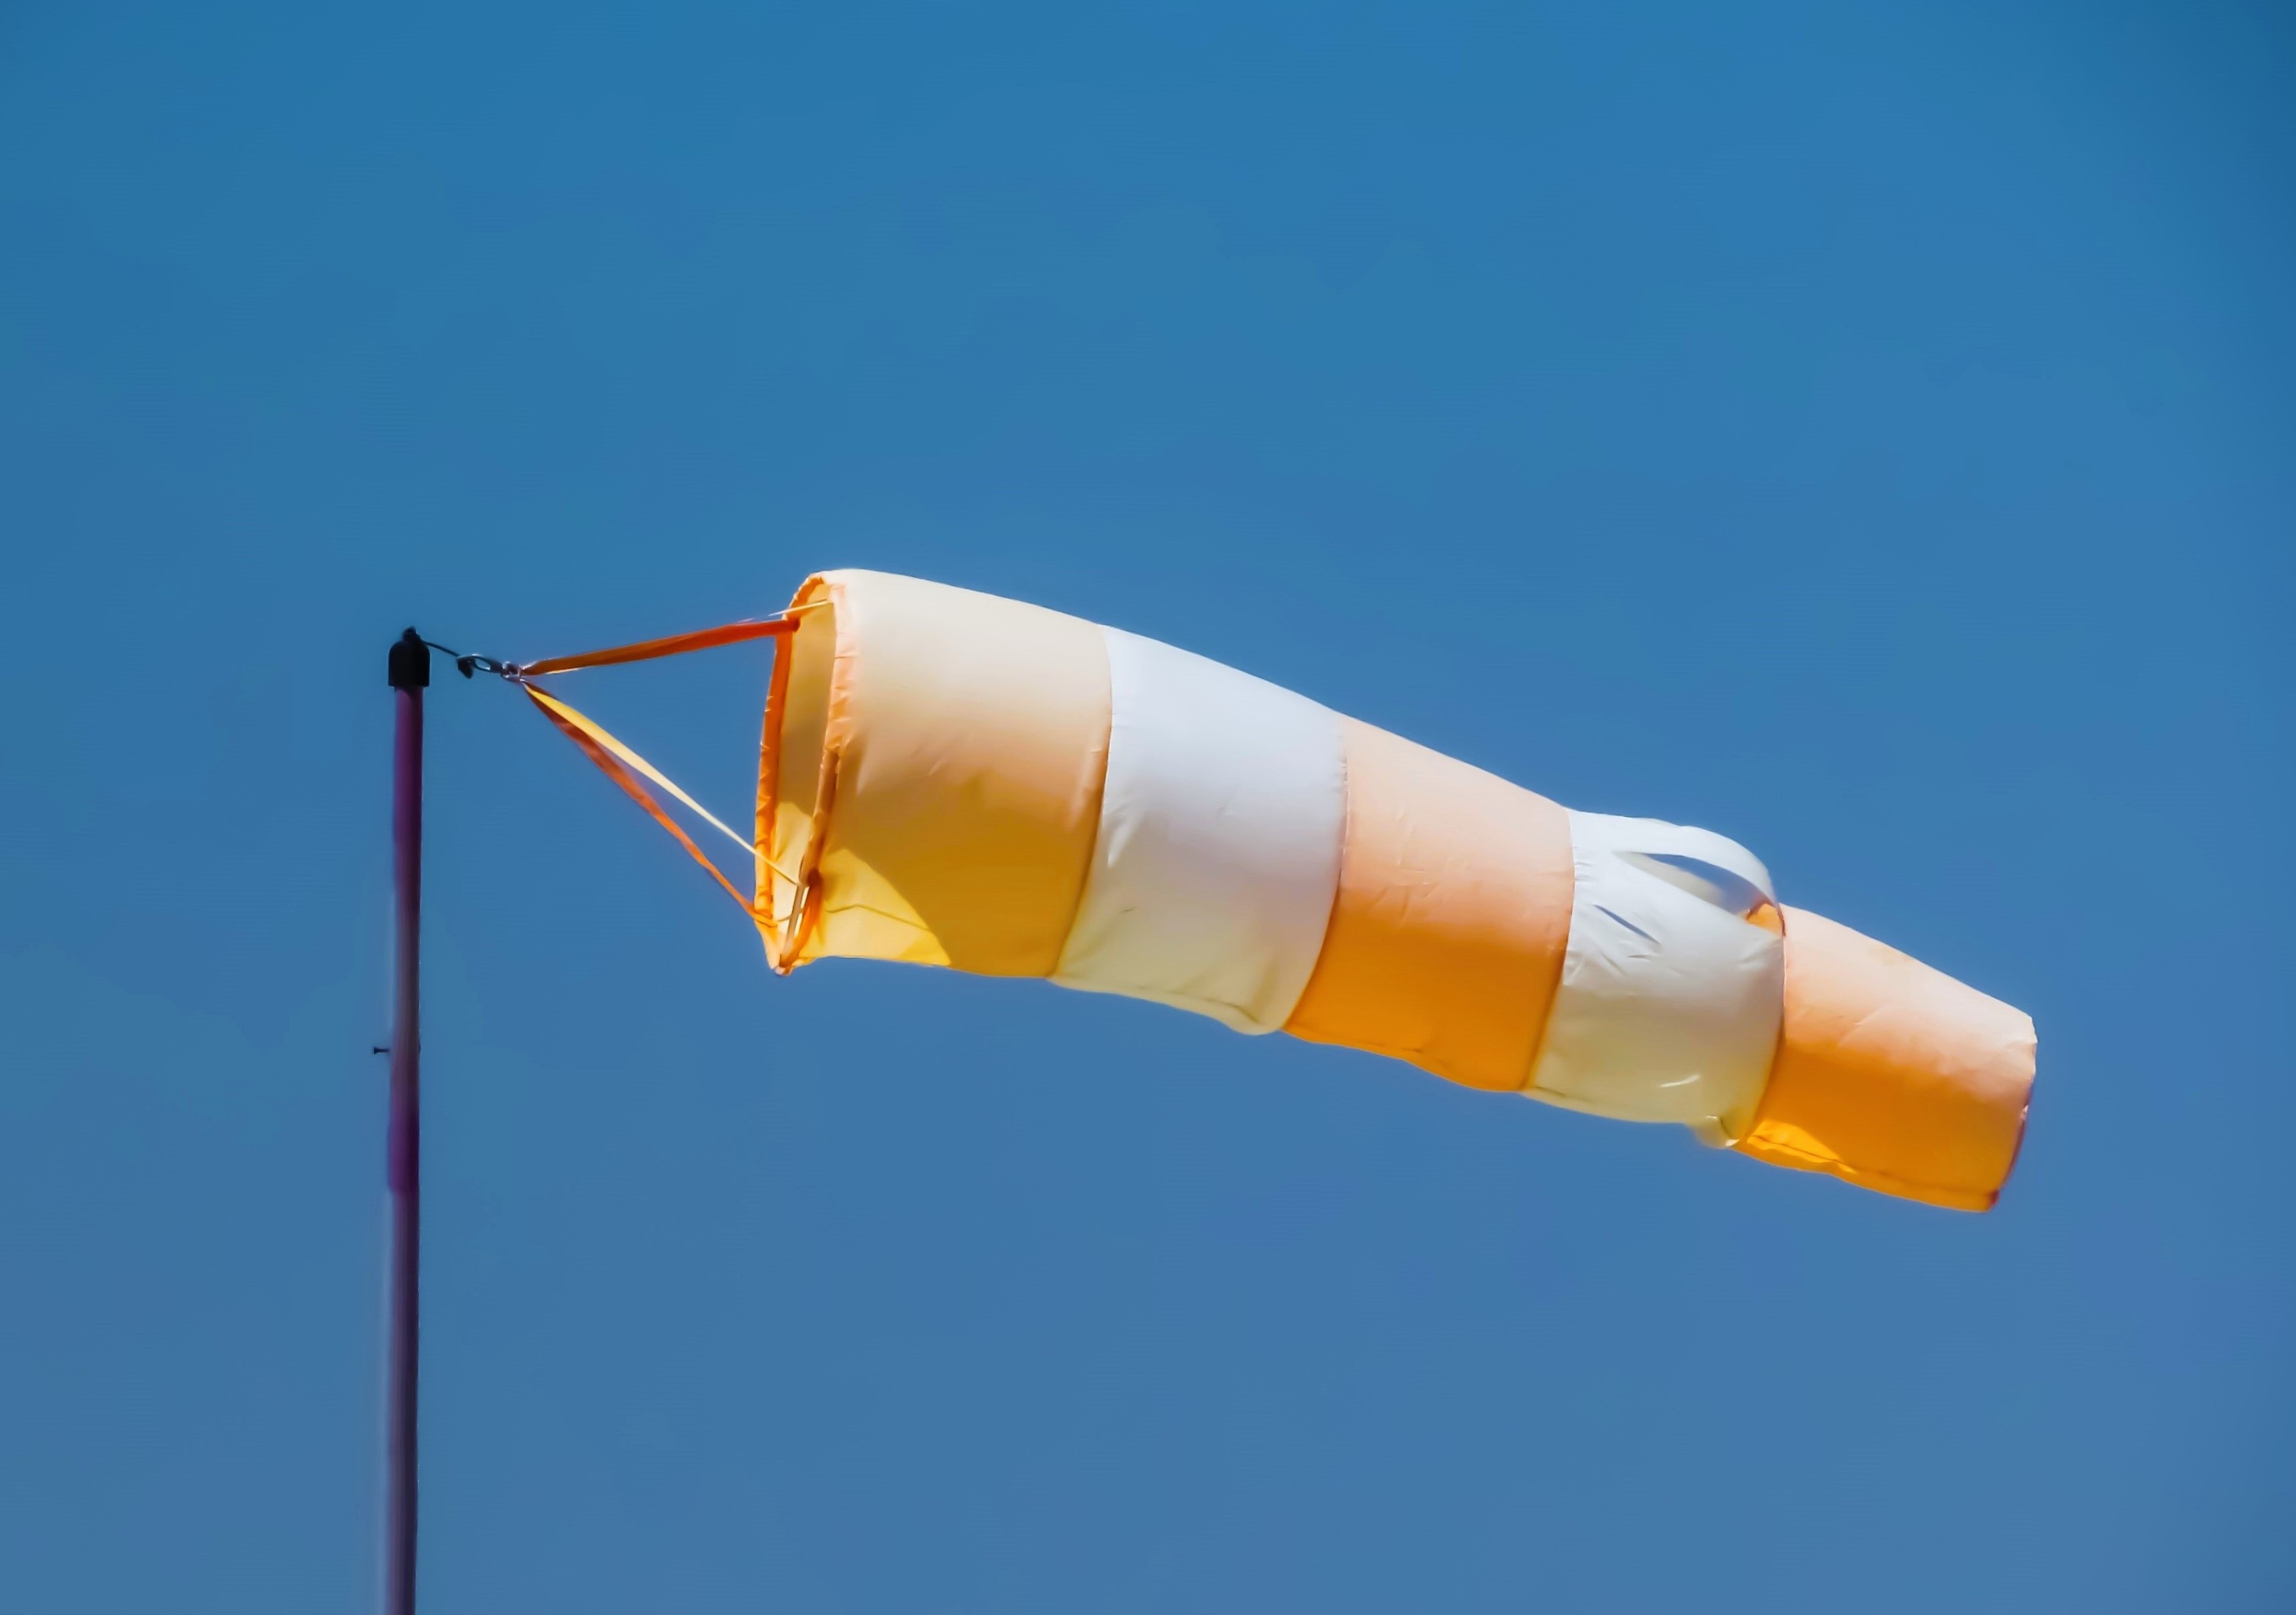 orange and white pole kite